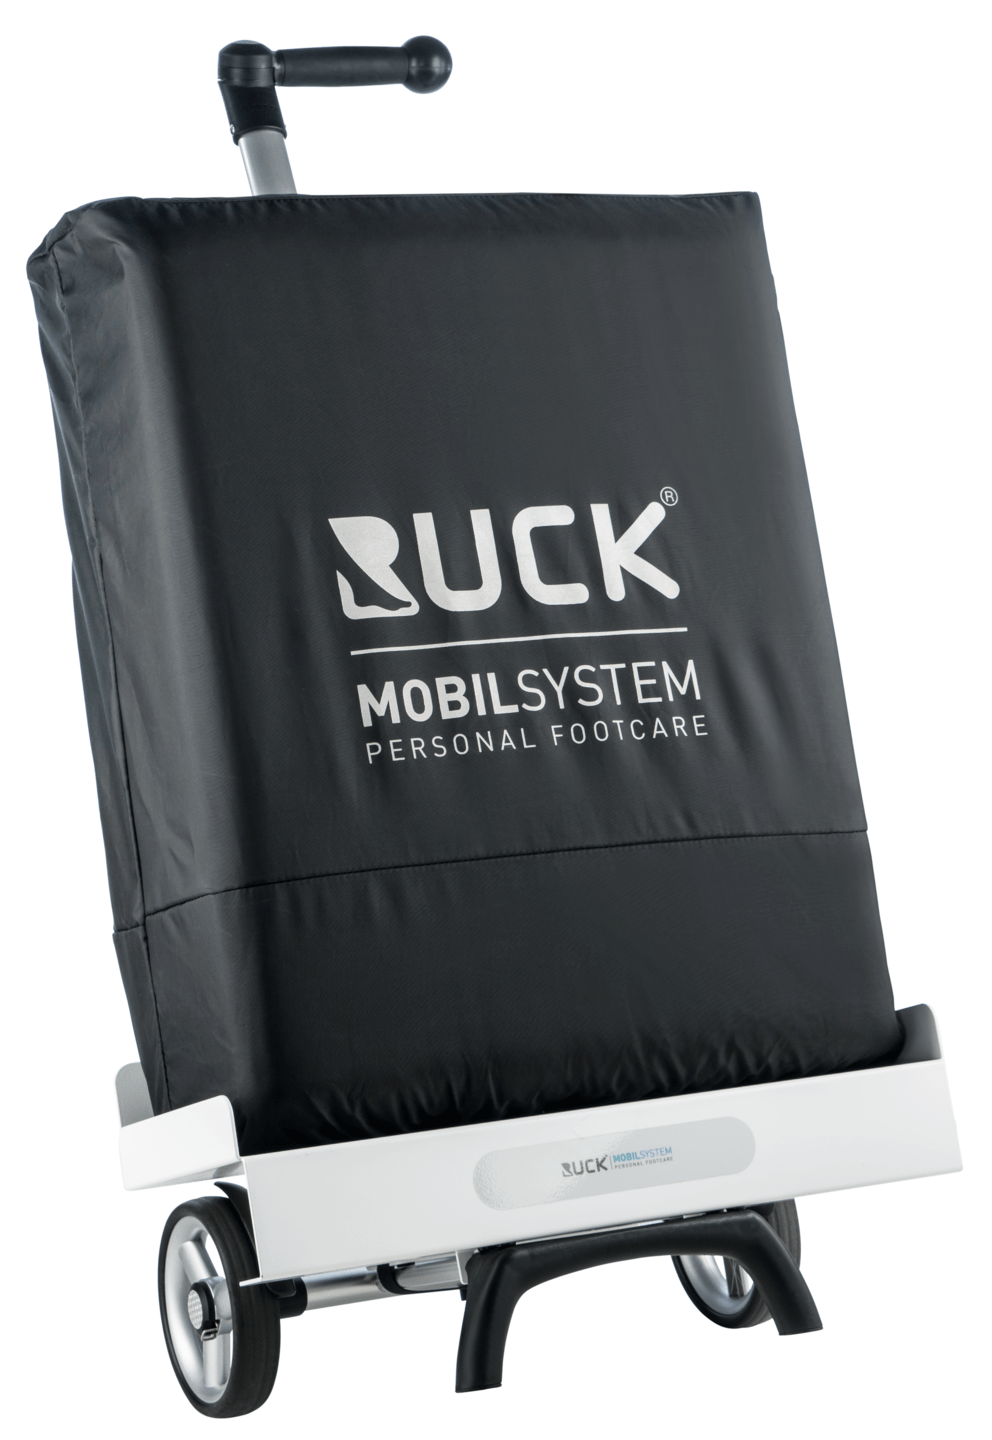 RUCK MOBIL SYSTEM - Regenhülle in schwarz